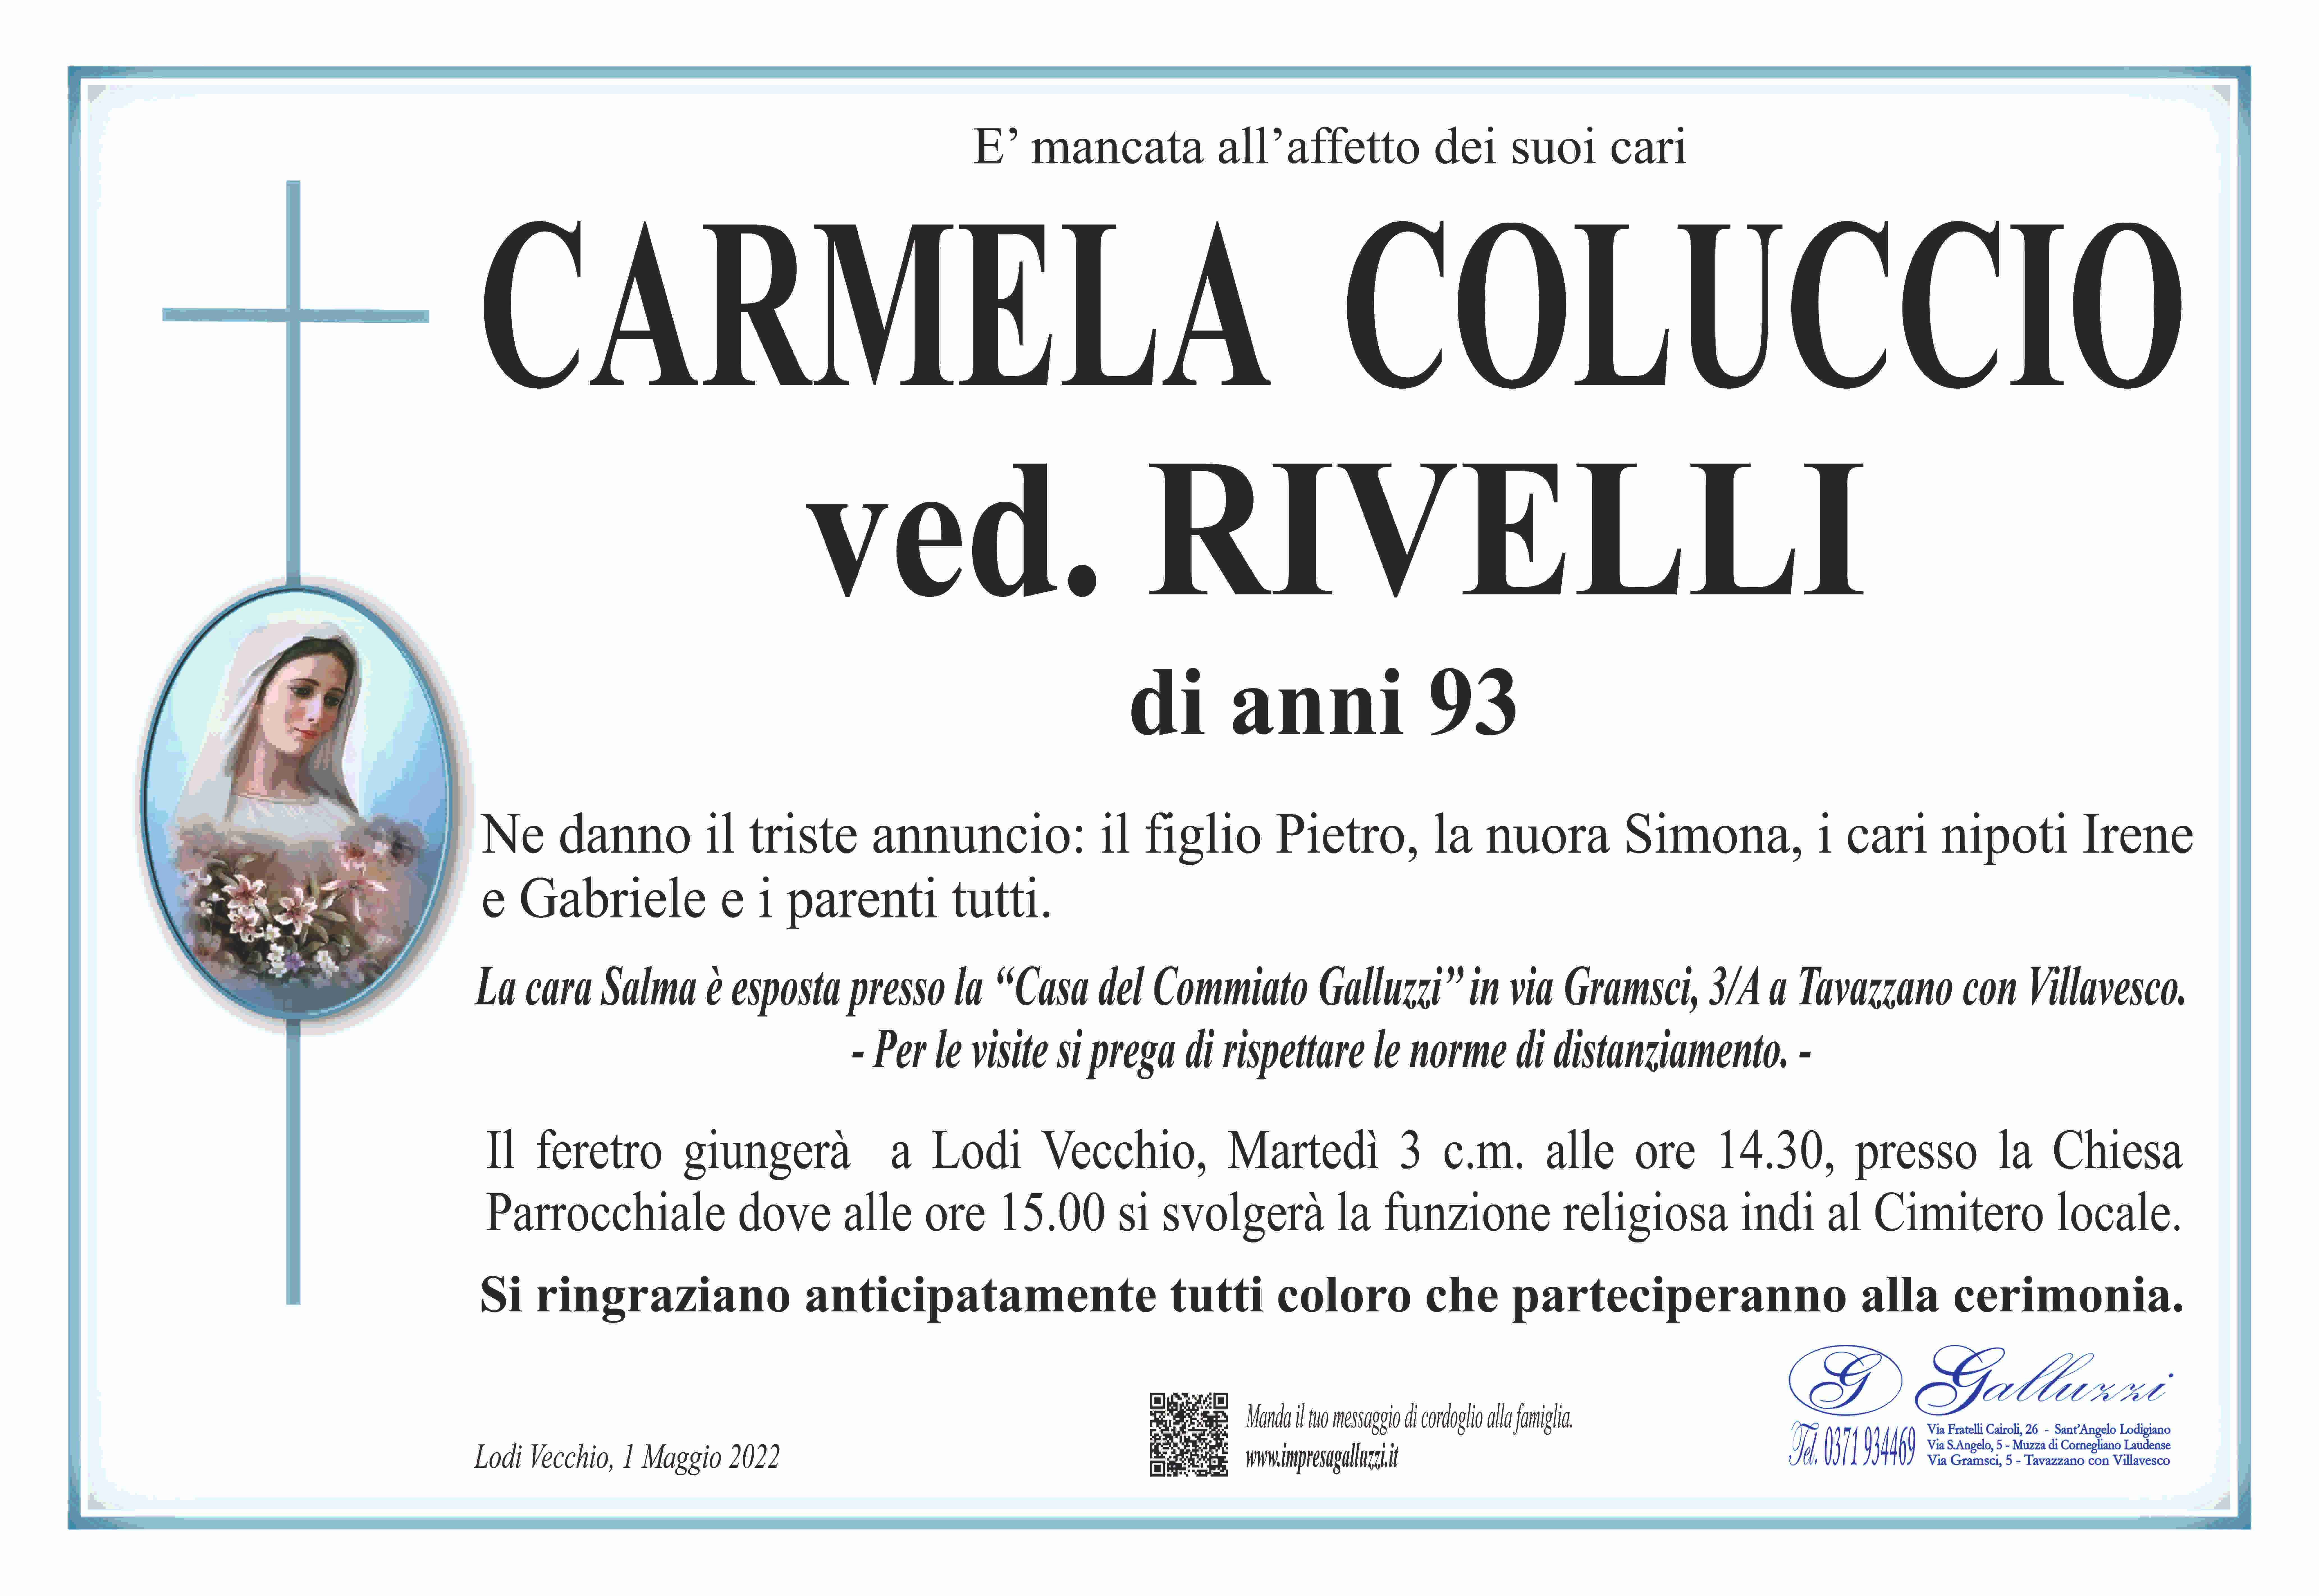 Carmela Coluccio